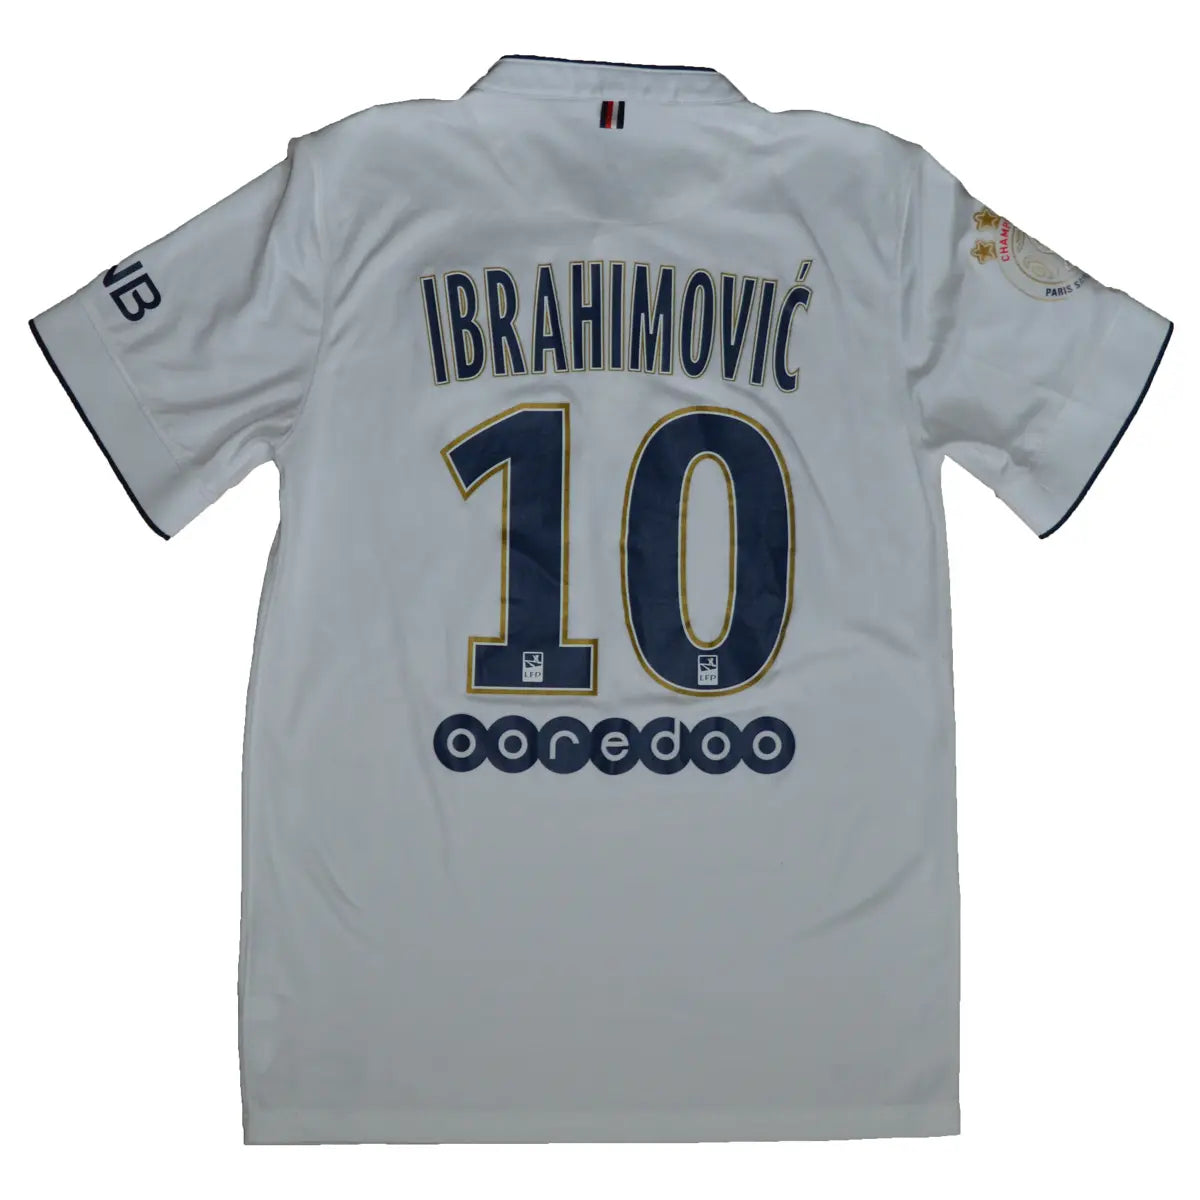 Maillot retro/vintage authentique extérieur PSG blanc, floqué Ibrahimovic 2014-2015